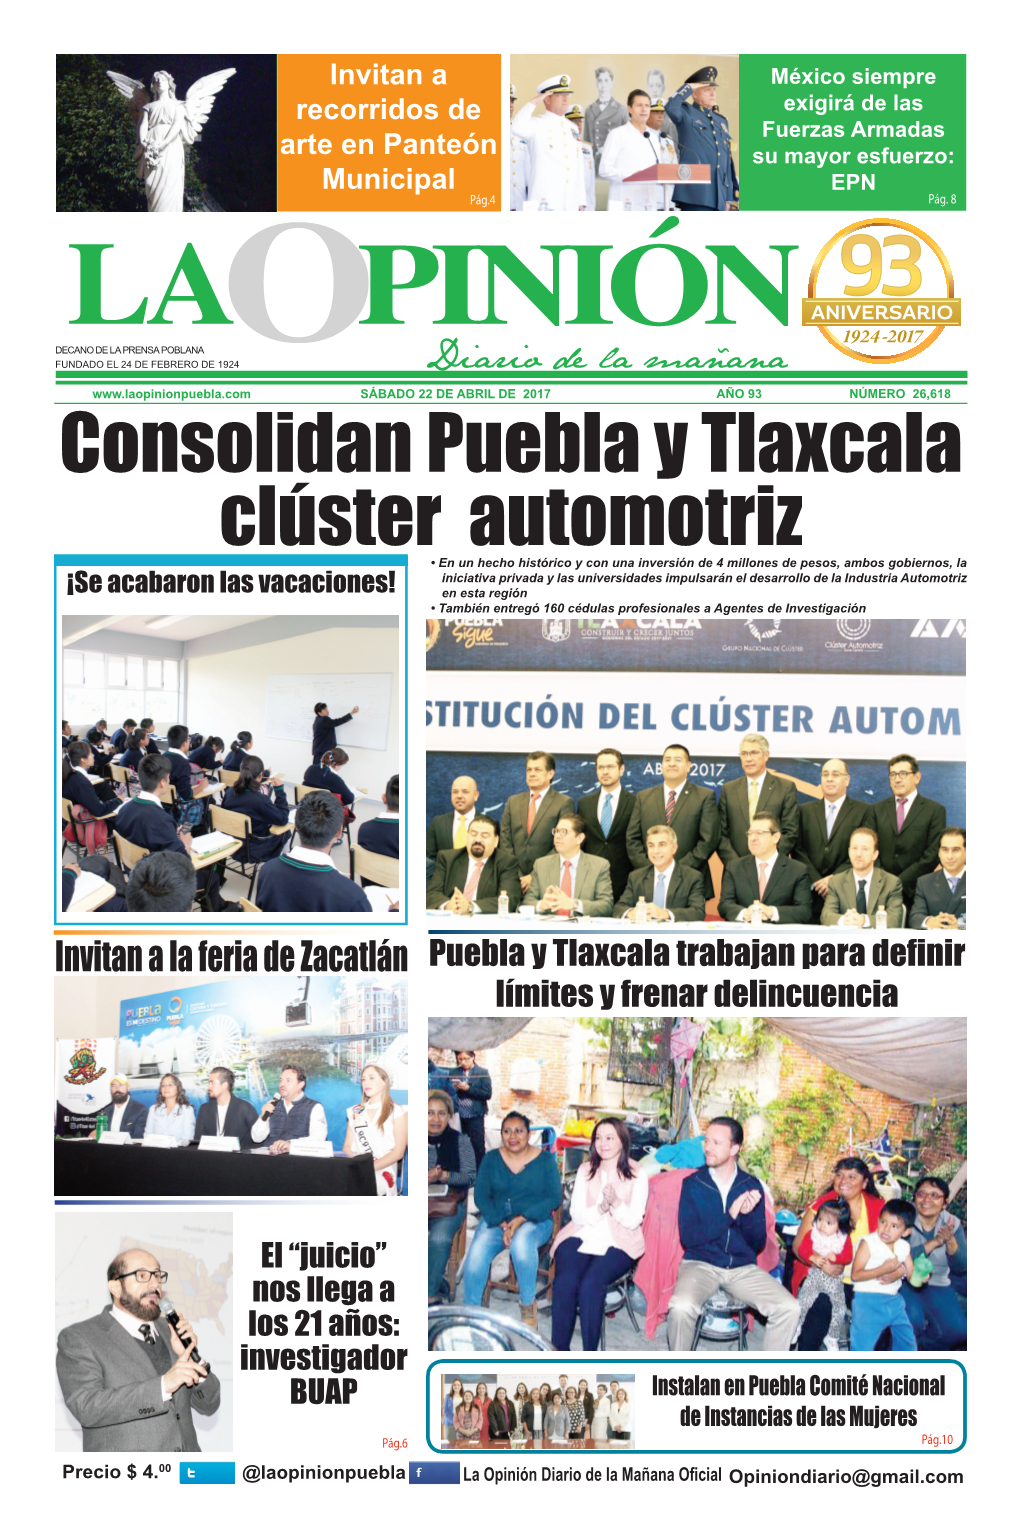 Consolidan Puebla Y Tlaxcala Clúster Automotriz